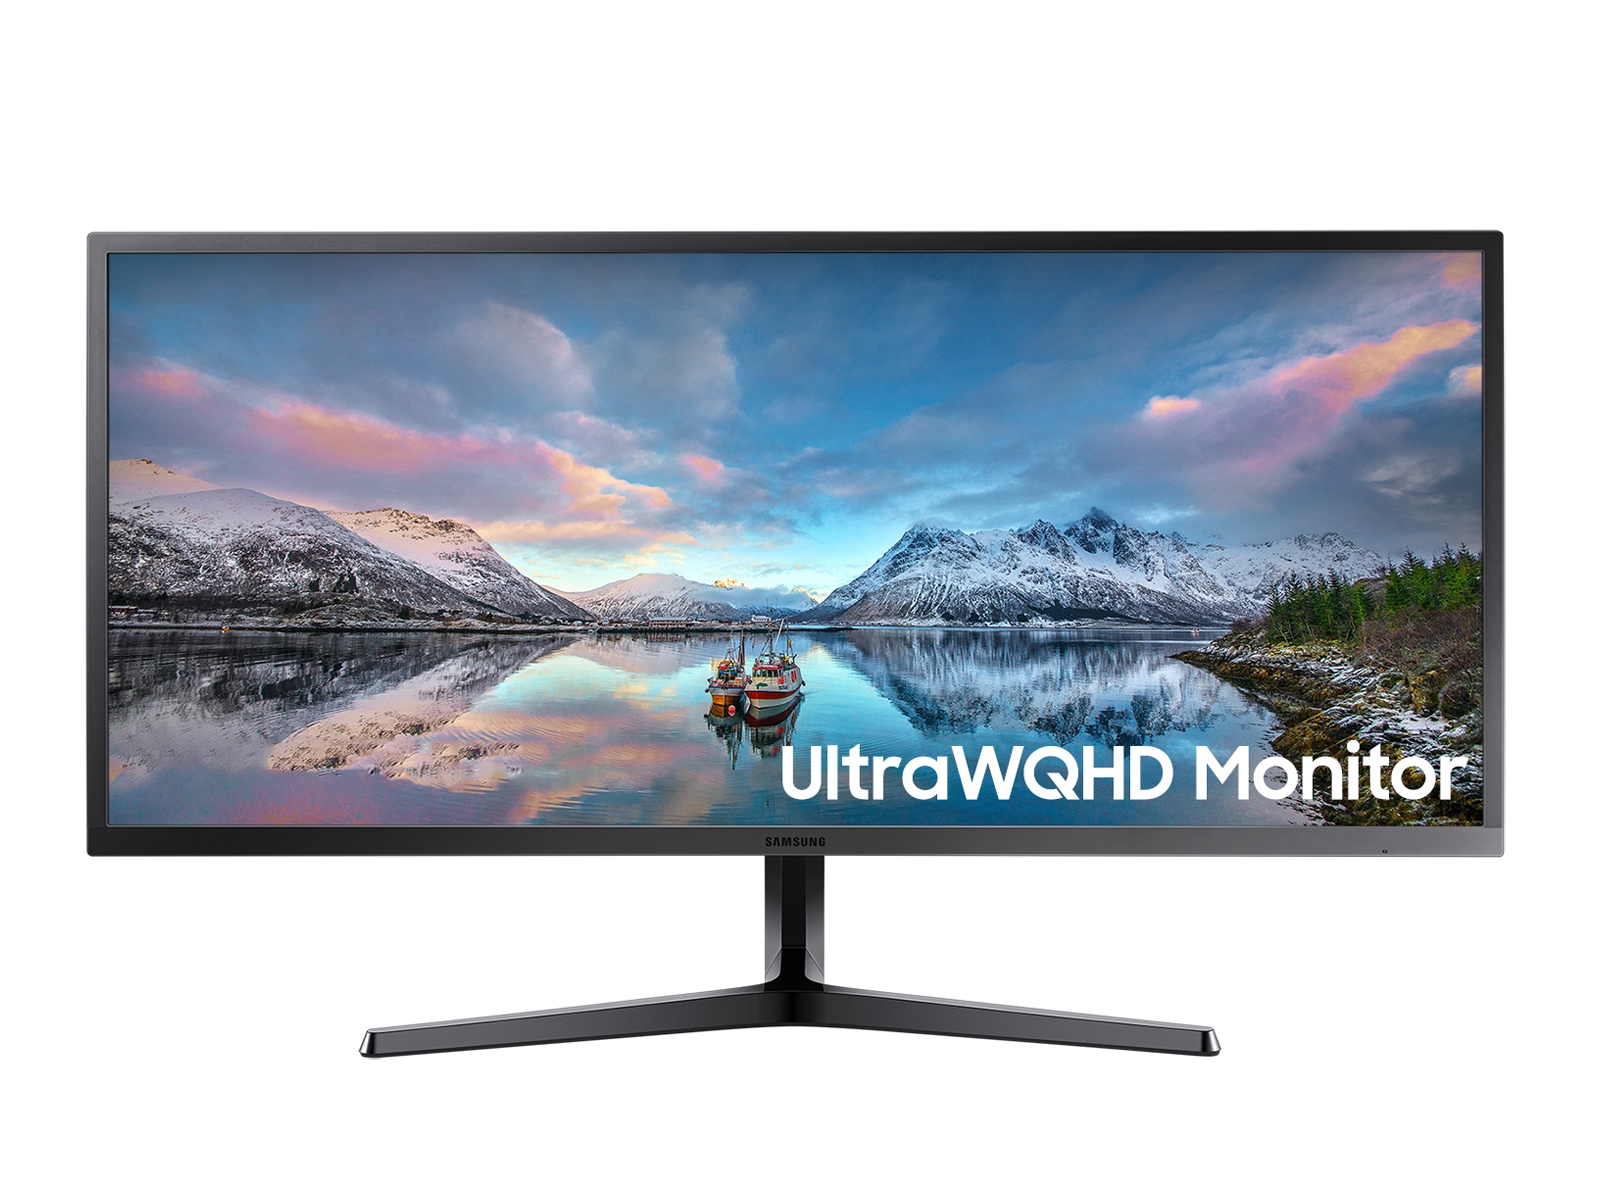 34 SJ55W Ultra WQHD Monitor Monitors - LS34J550WQNXZA